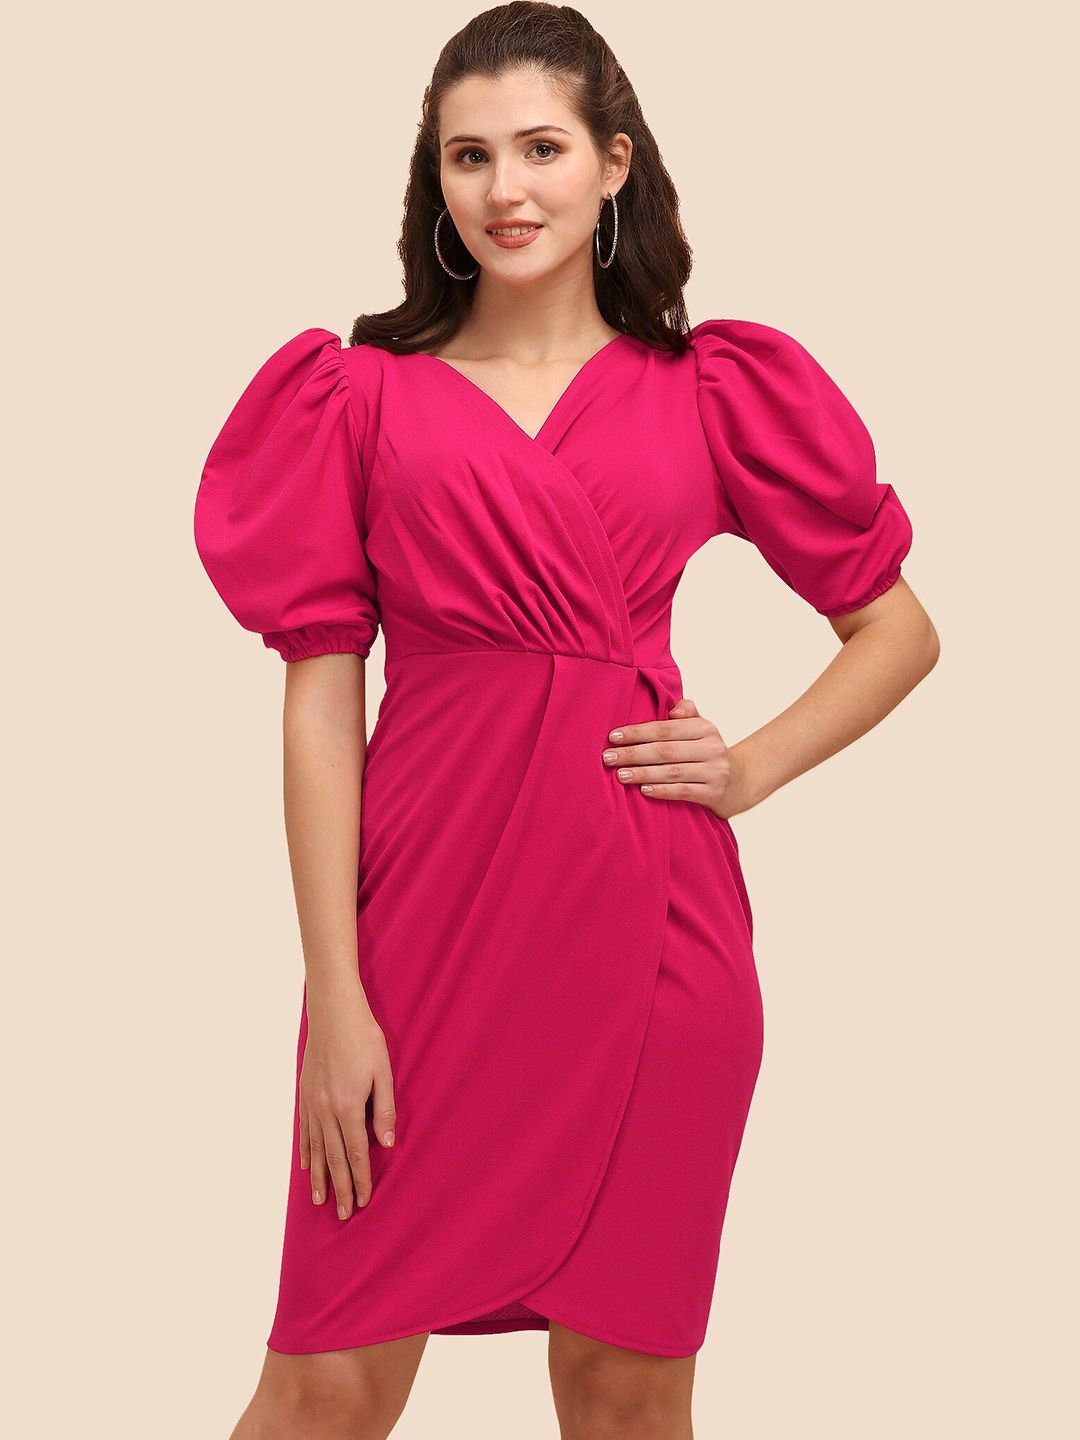 Sheetal Associates Women Pink Wrap Pattern Puff Sleeves Dress Price in India